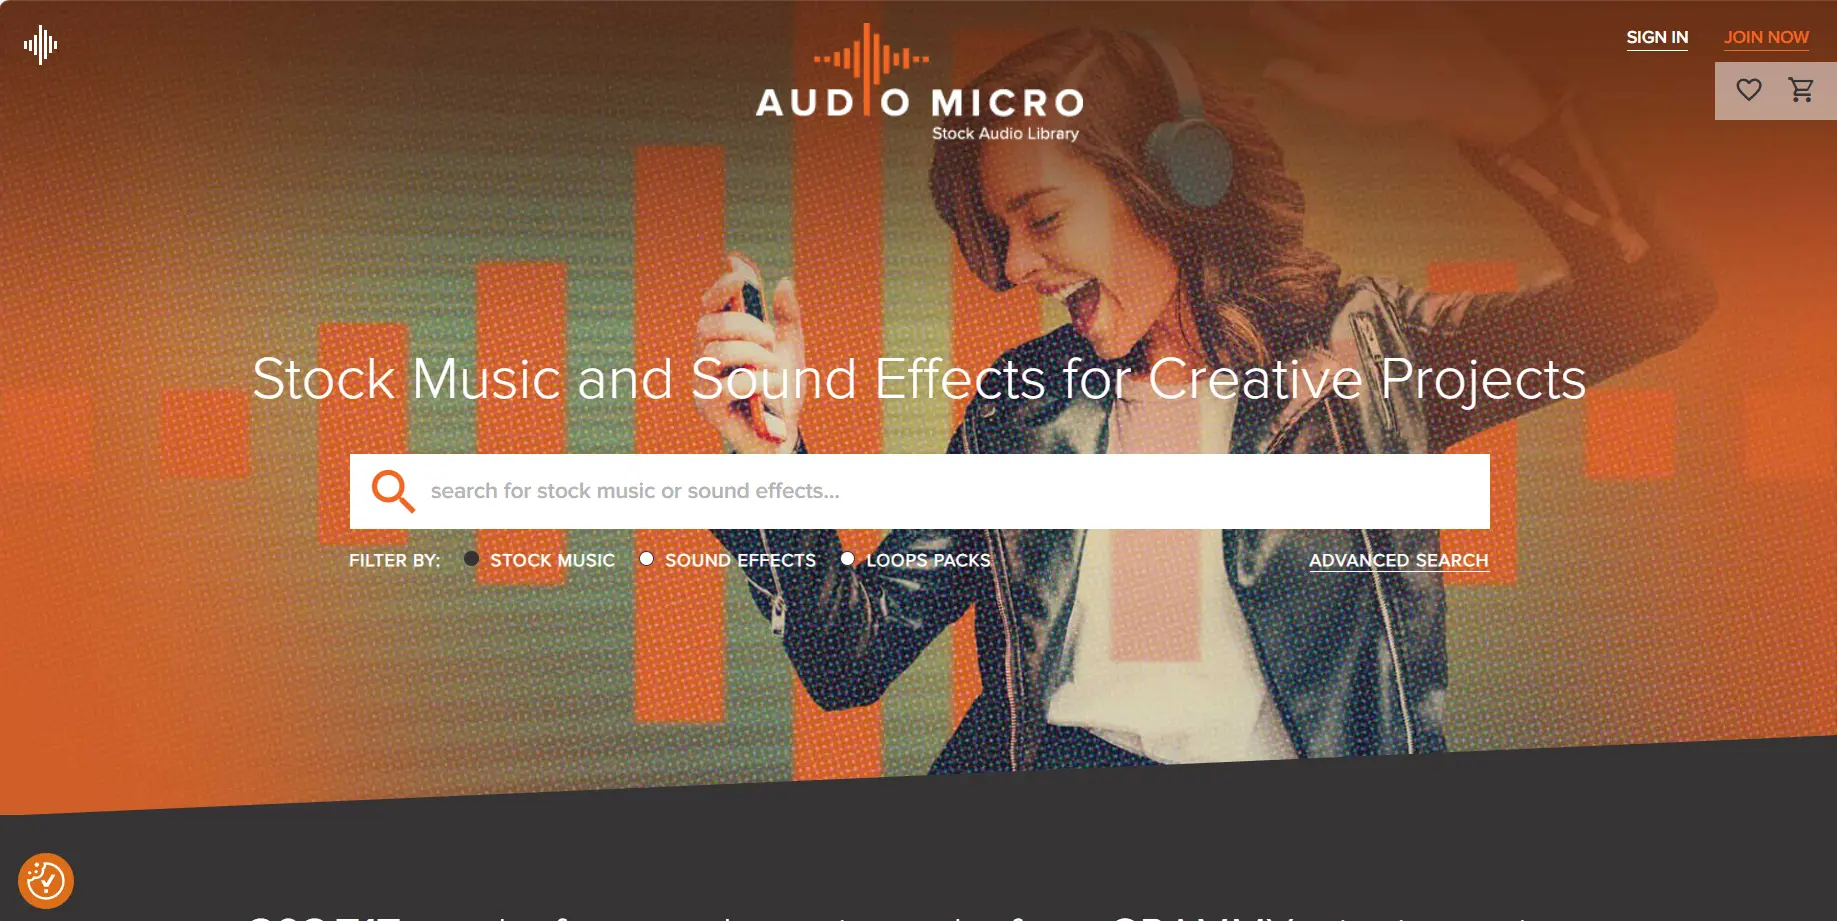 免費 BGM 背景音樂下載平台#05 - AudioMicro